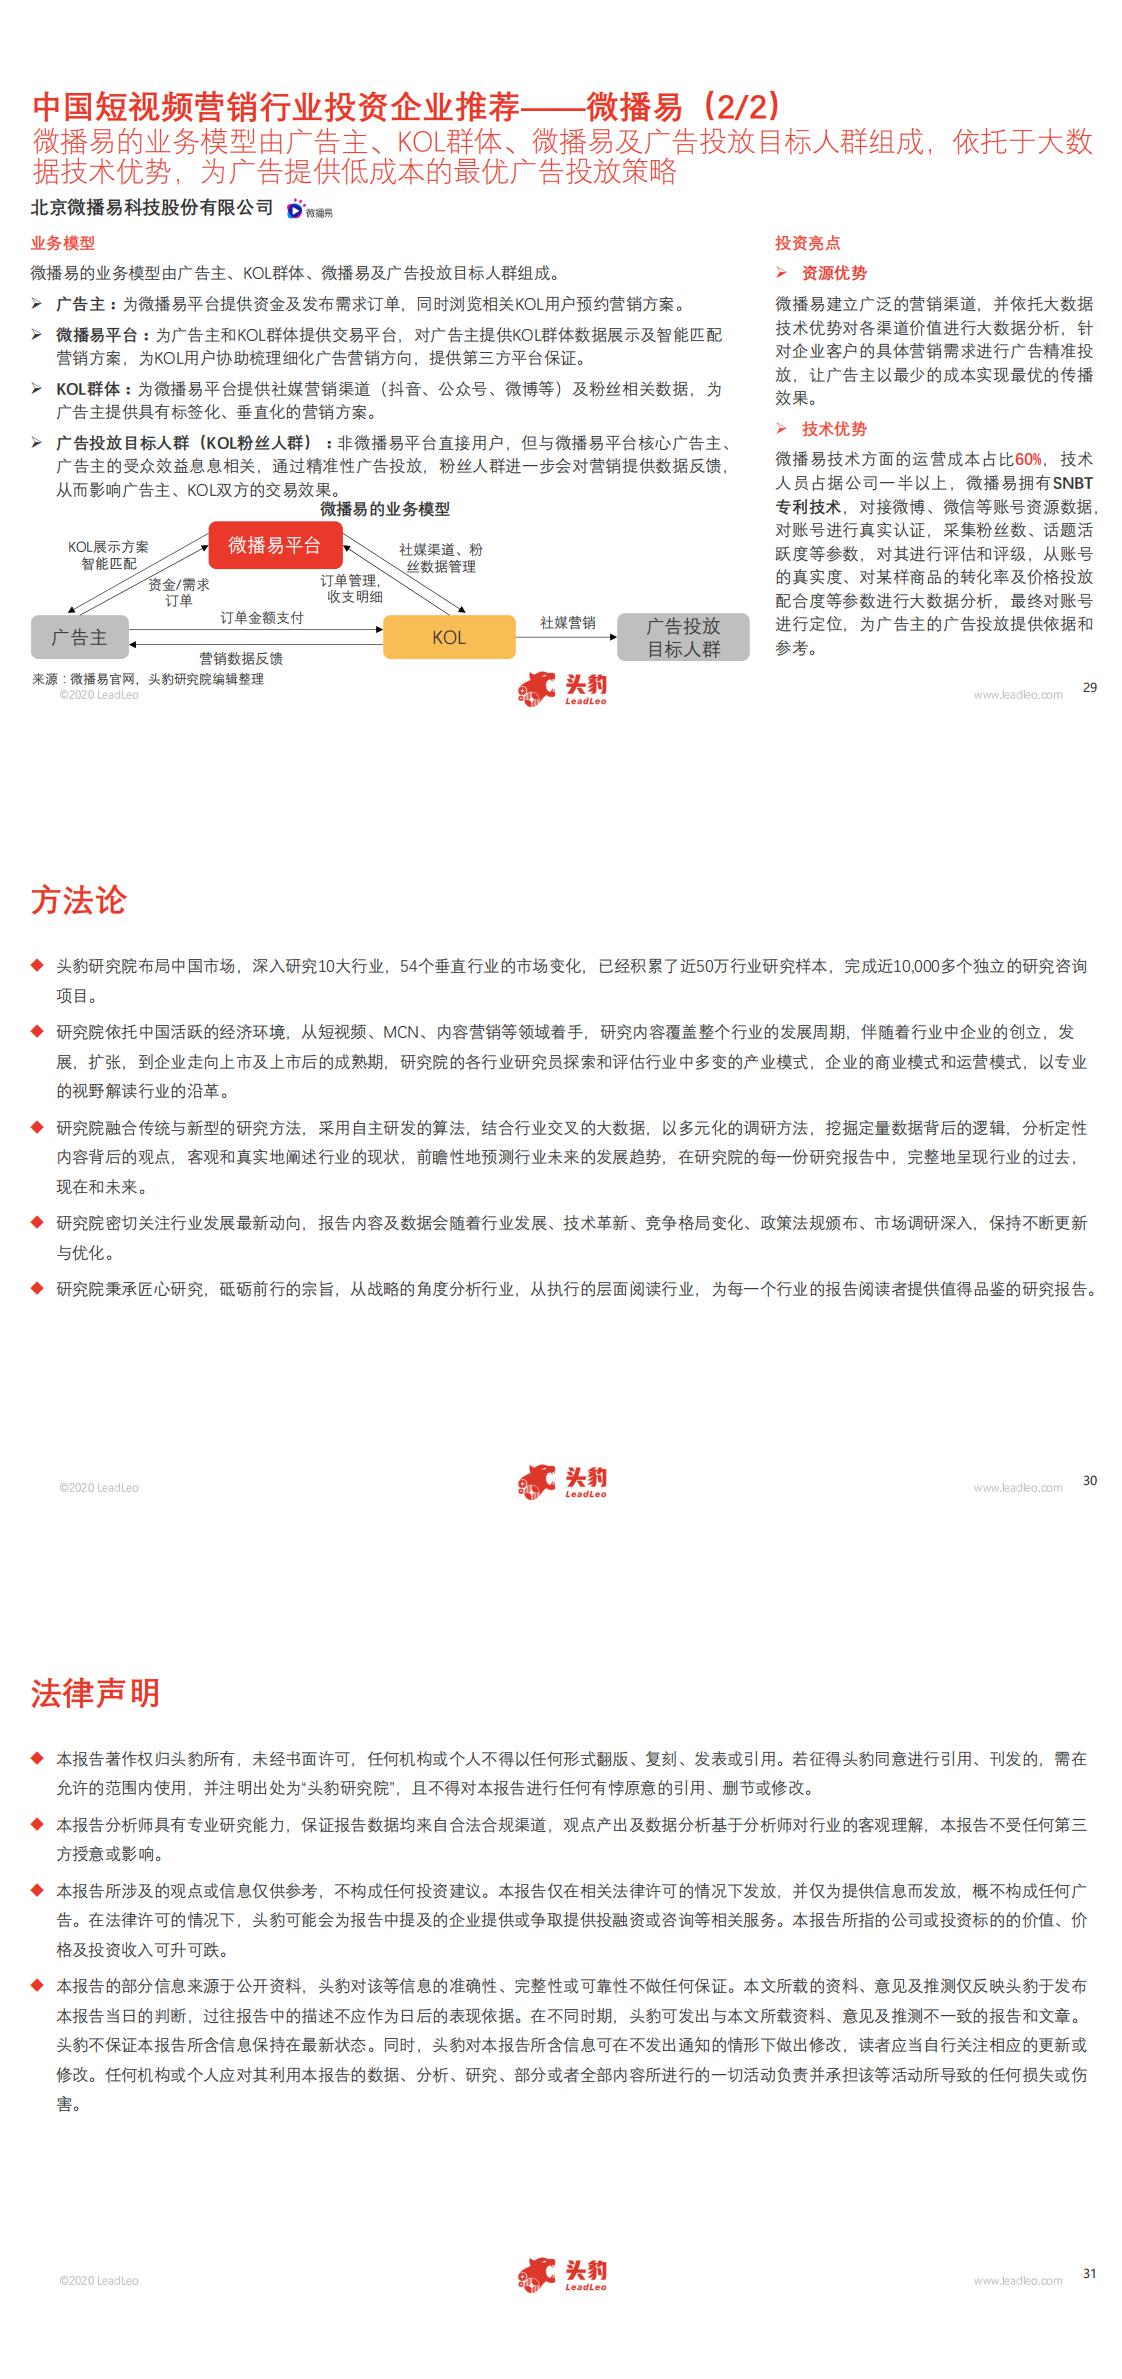 【头豹】2020年中国短视频营销行业概览_1.jpg